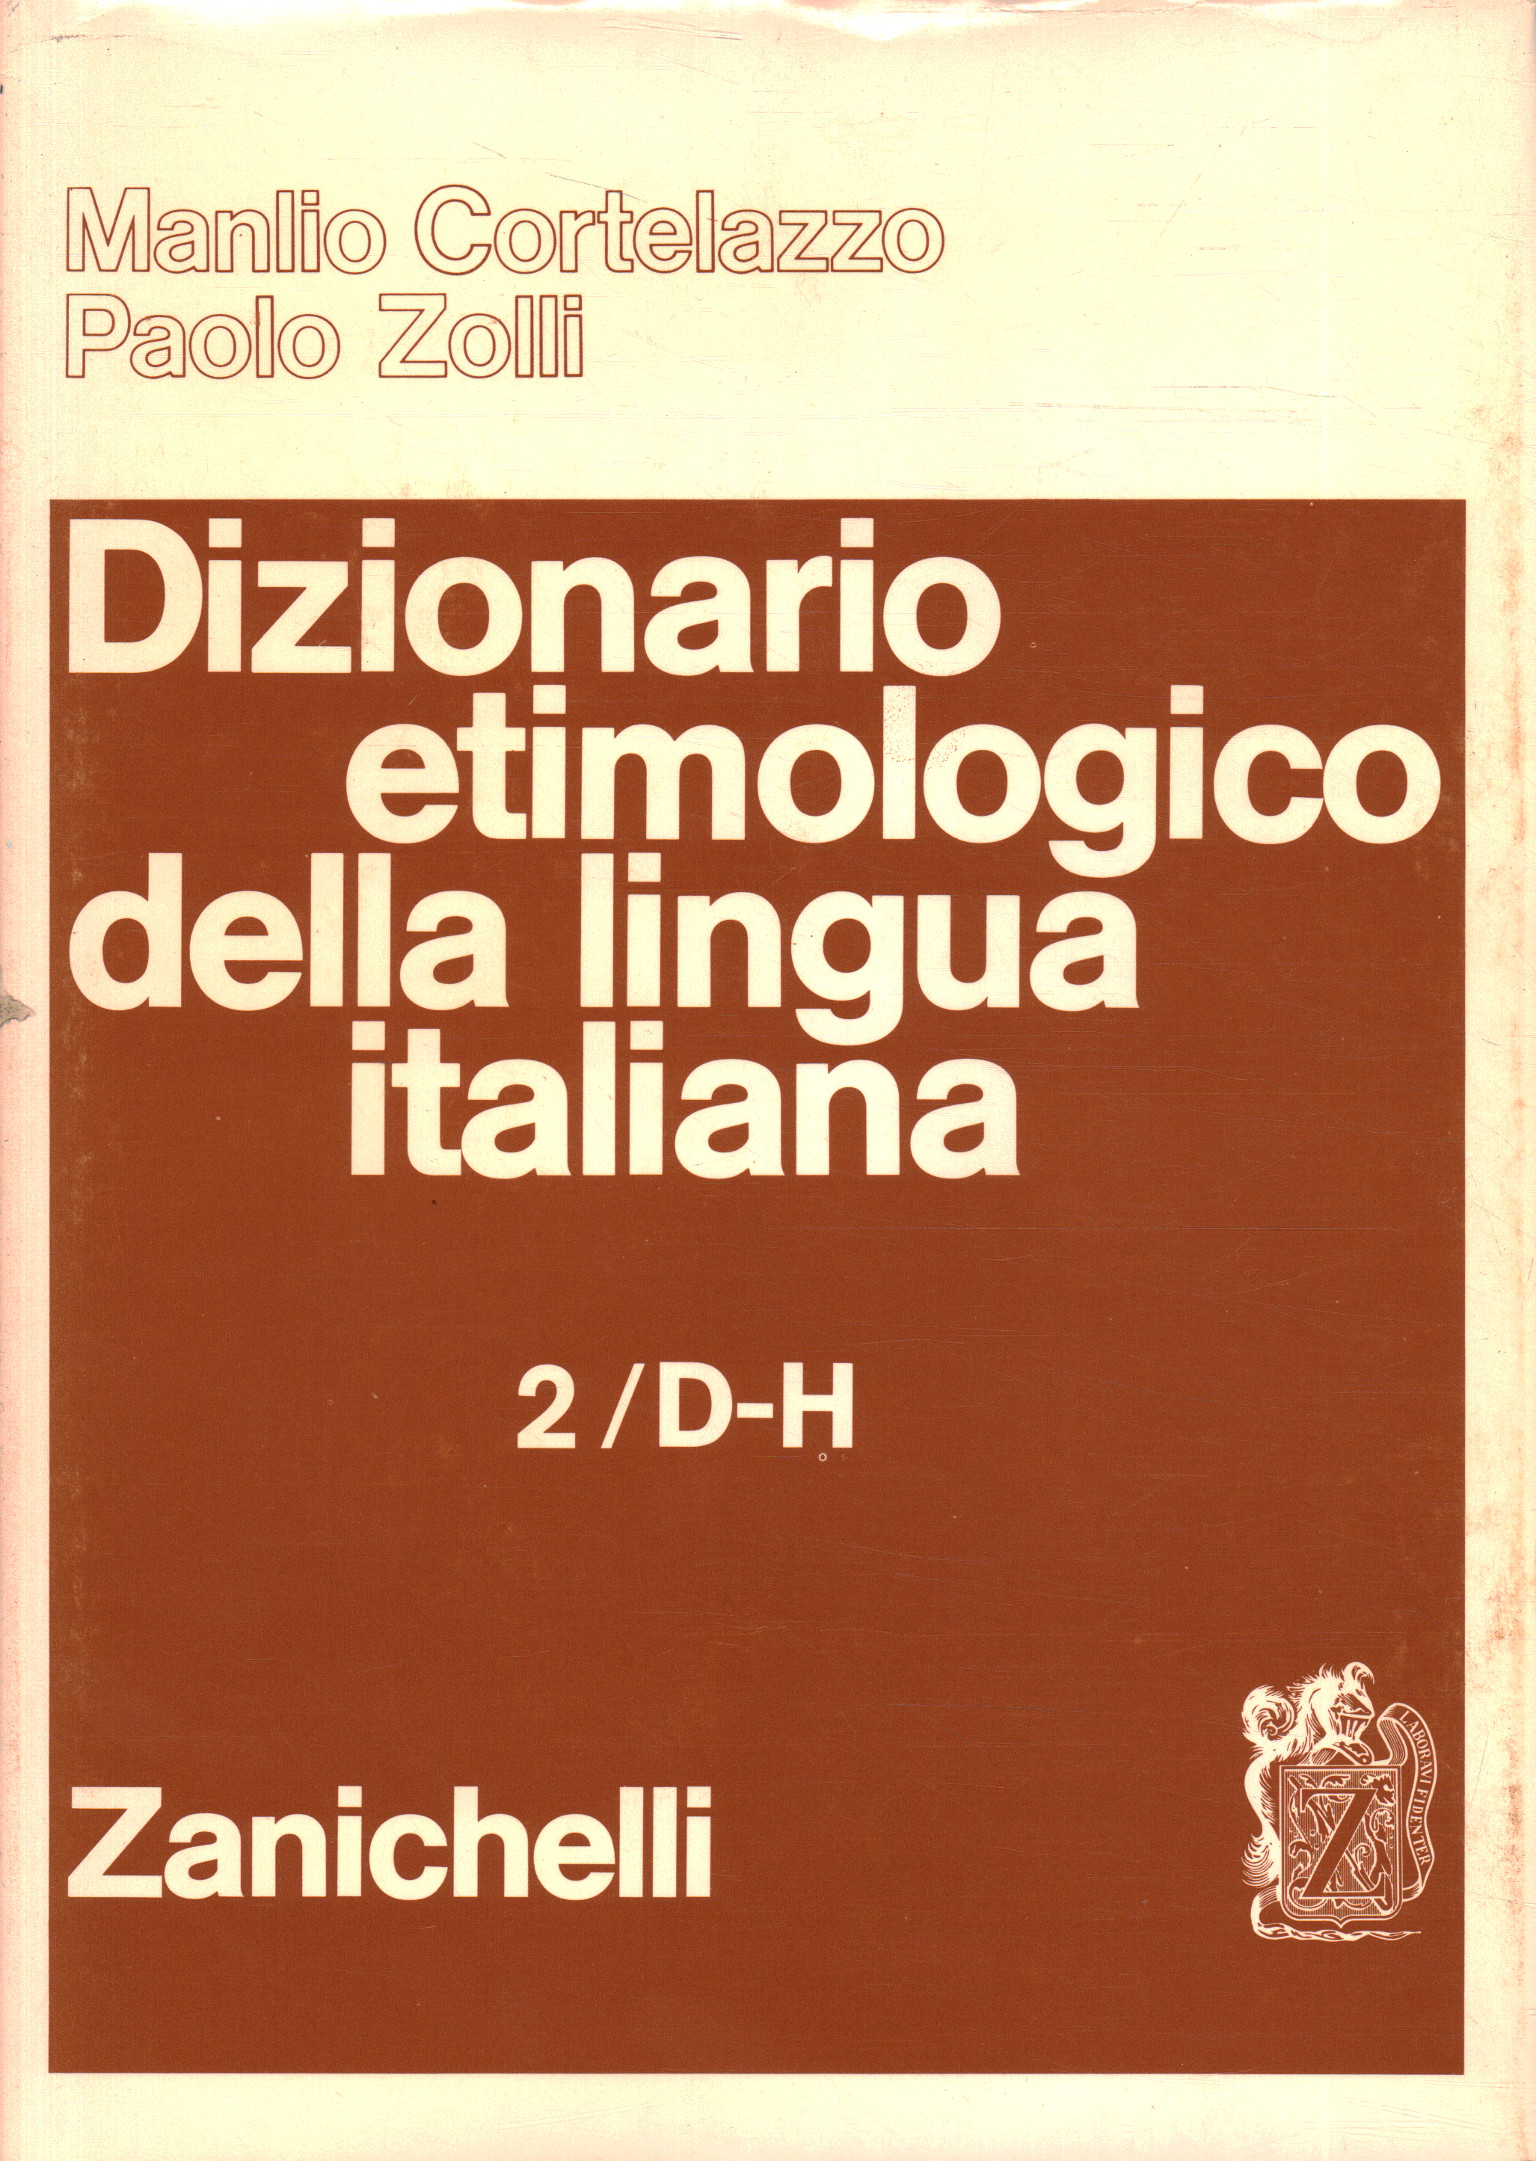 Dictionnaire étymologique de la langue italienne